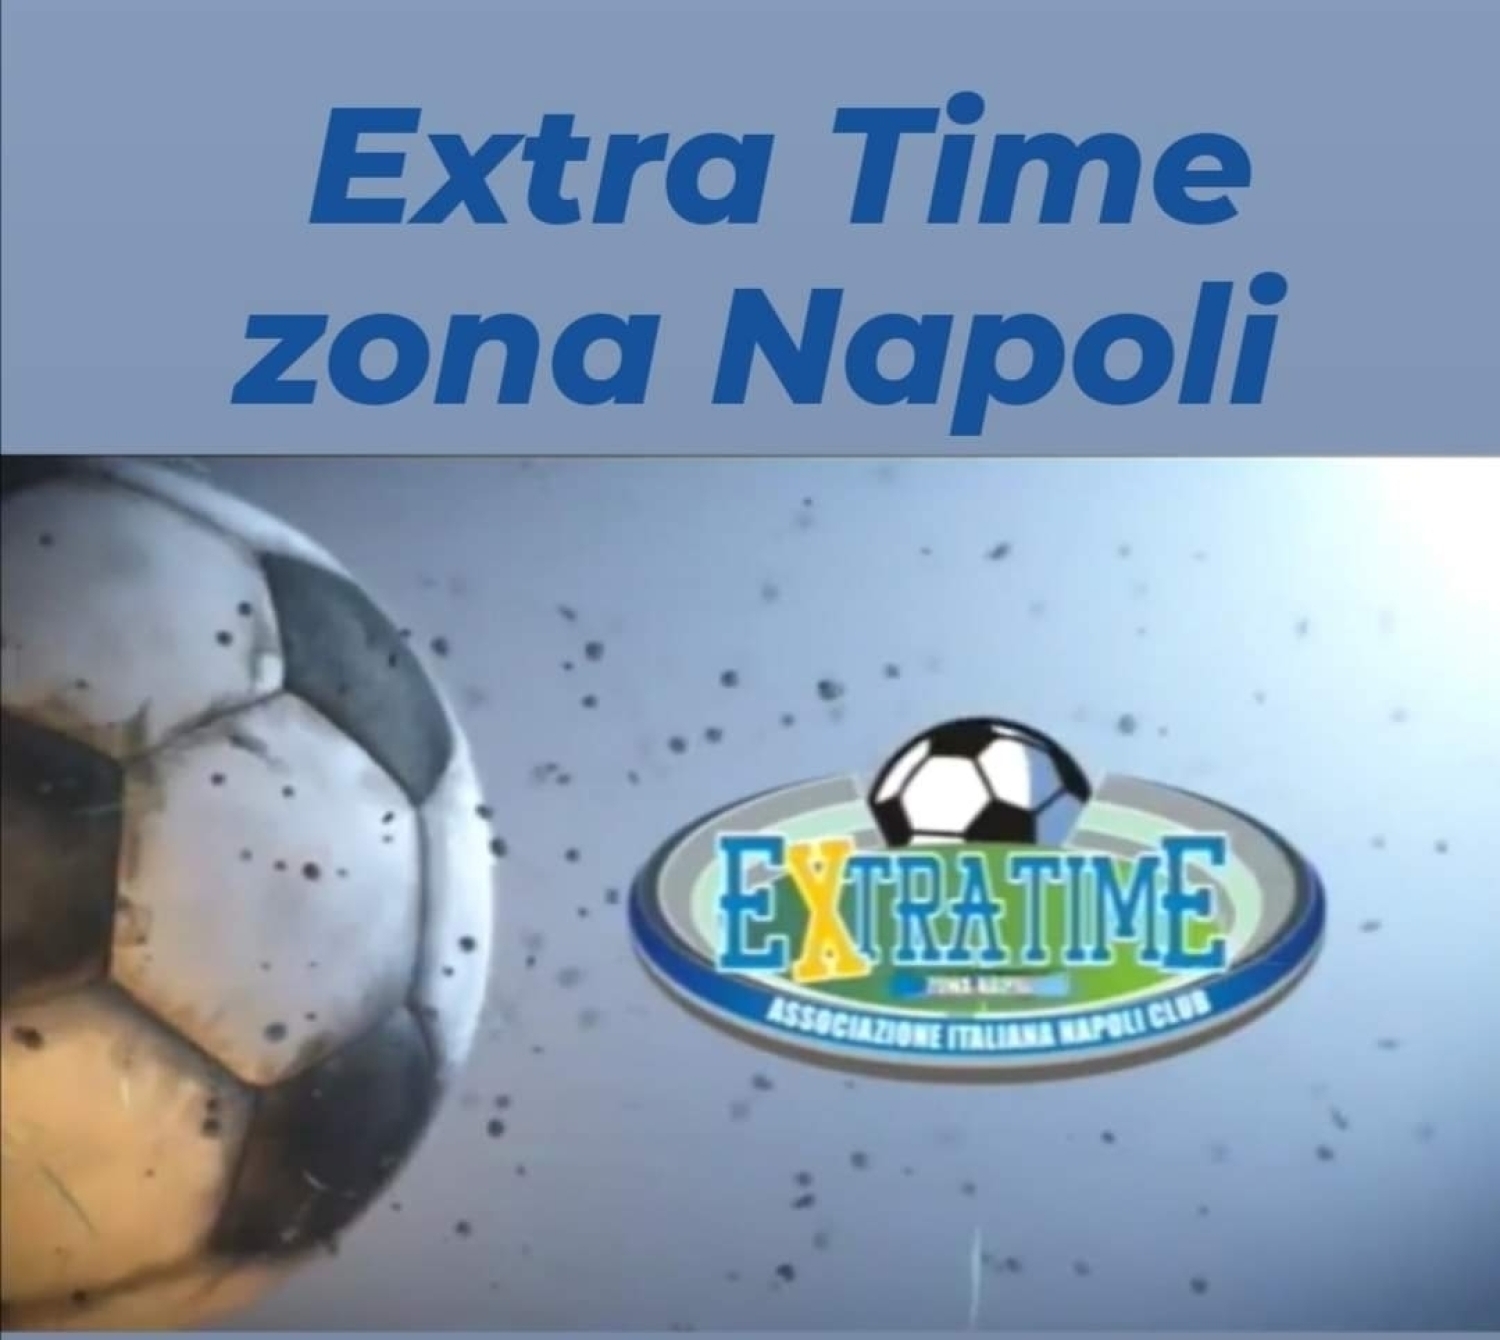 Stasera "Extra Time Zona Napoli" su TvLuna